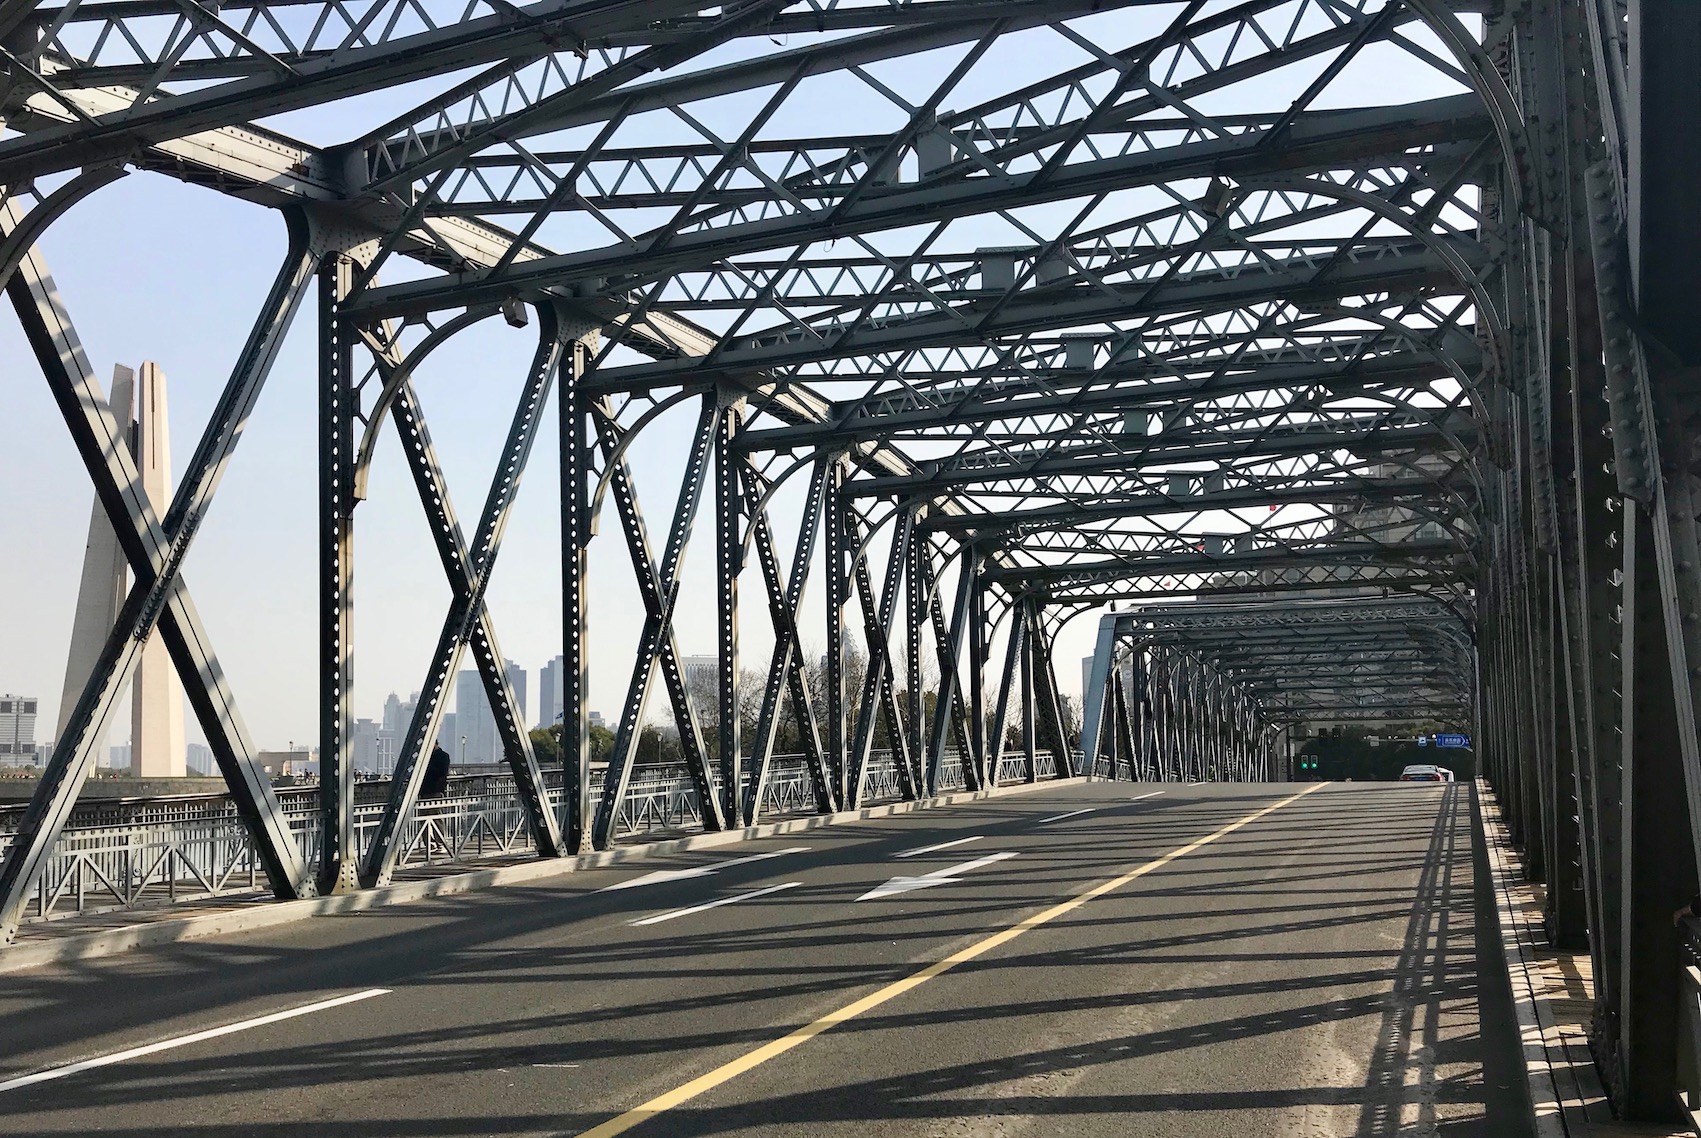 Waibaidu Bridge Shanghai.